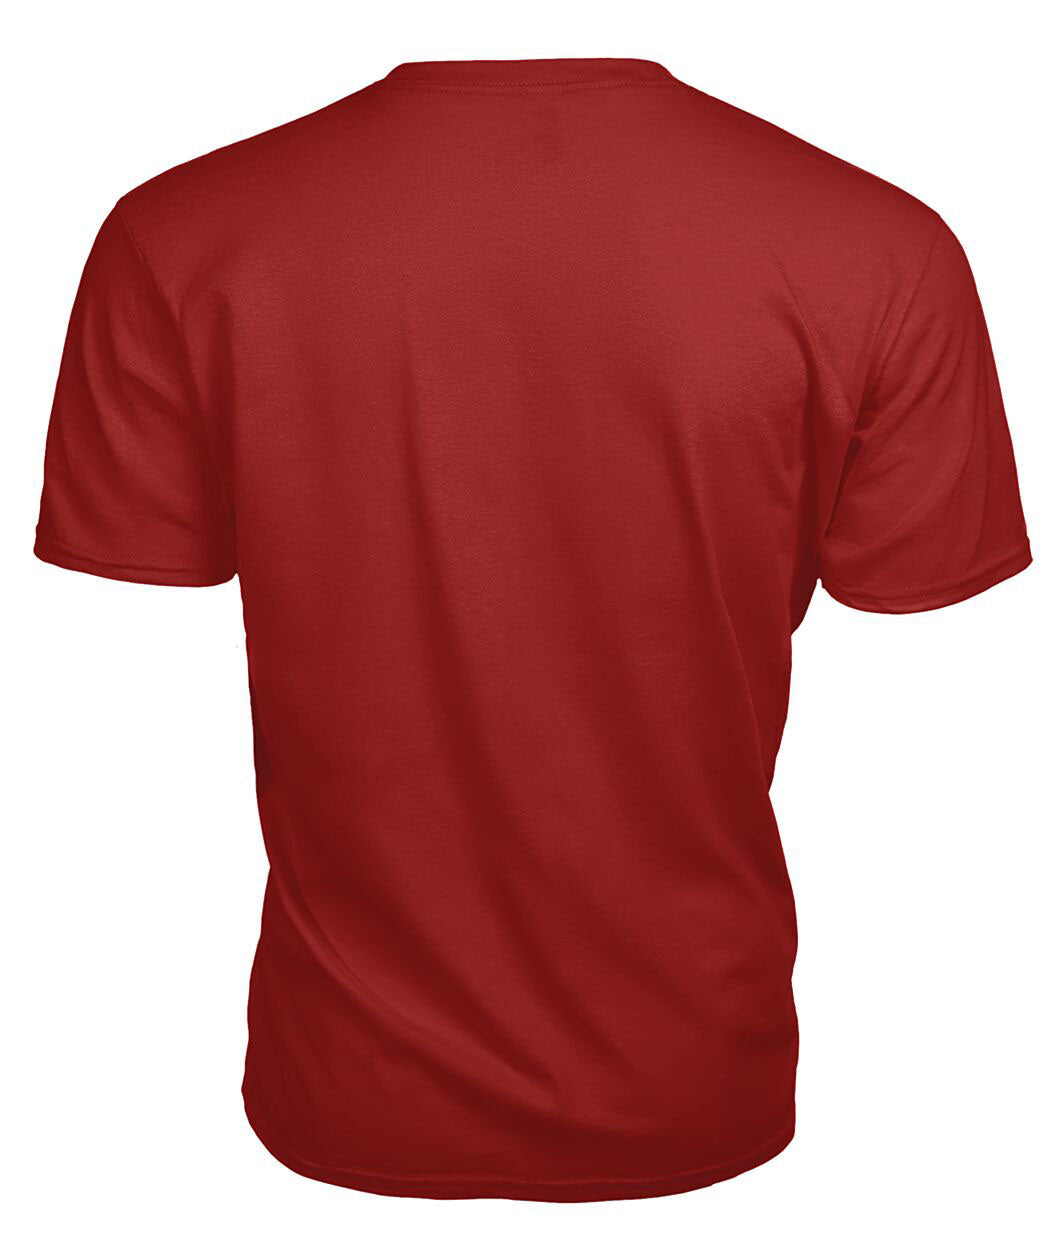 Henderson Modern Tartan Crest 2D T-shirt - Blood Runs Through My Veins Style